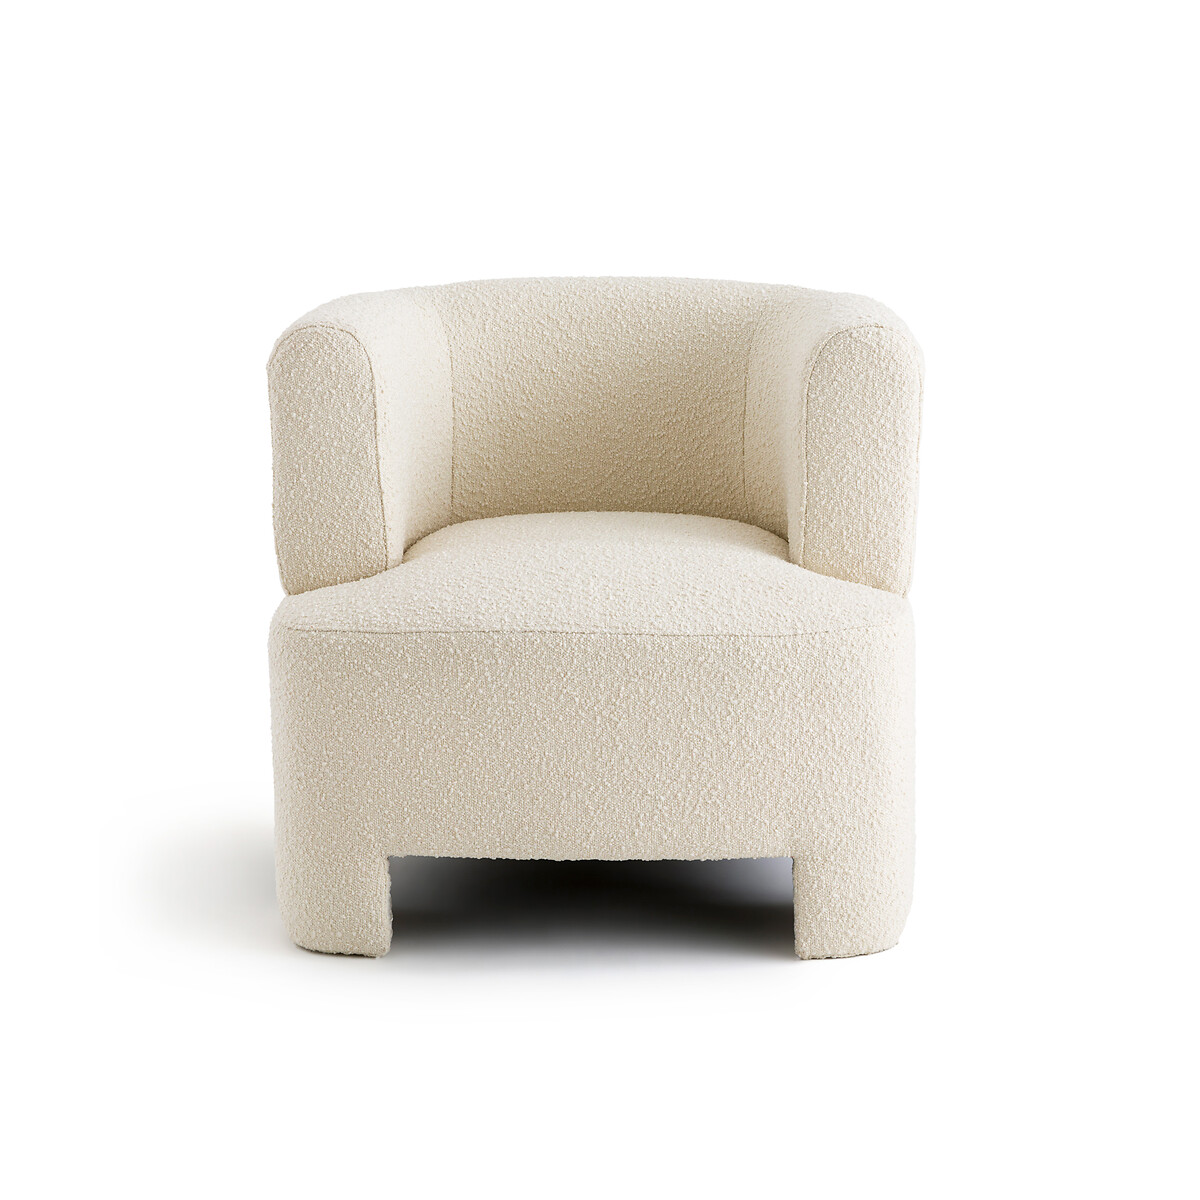 Кресло AM.PM Кресло Из ткани буклетт маленькая модель Darrel единый размер бежевый - фото 2